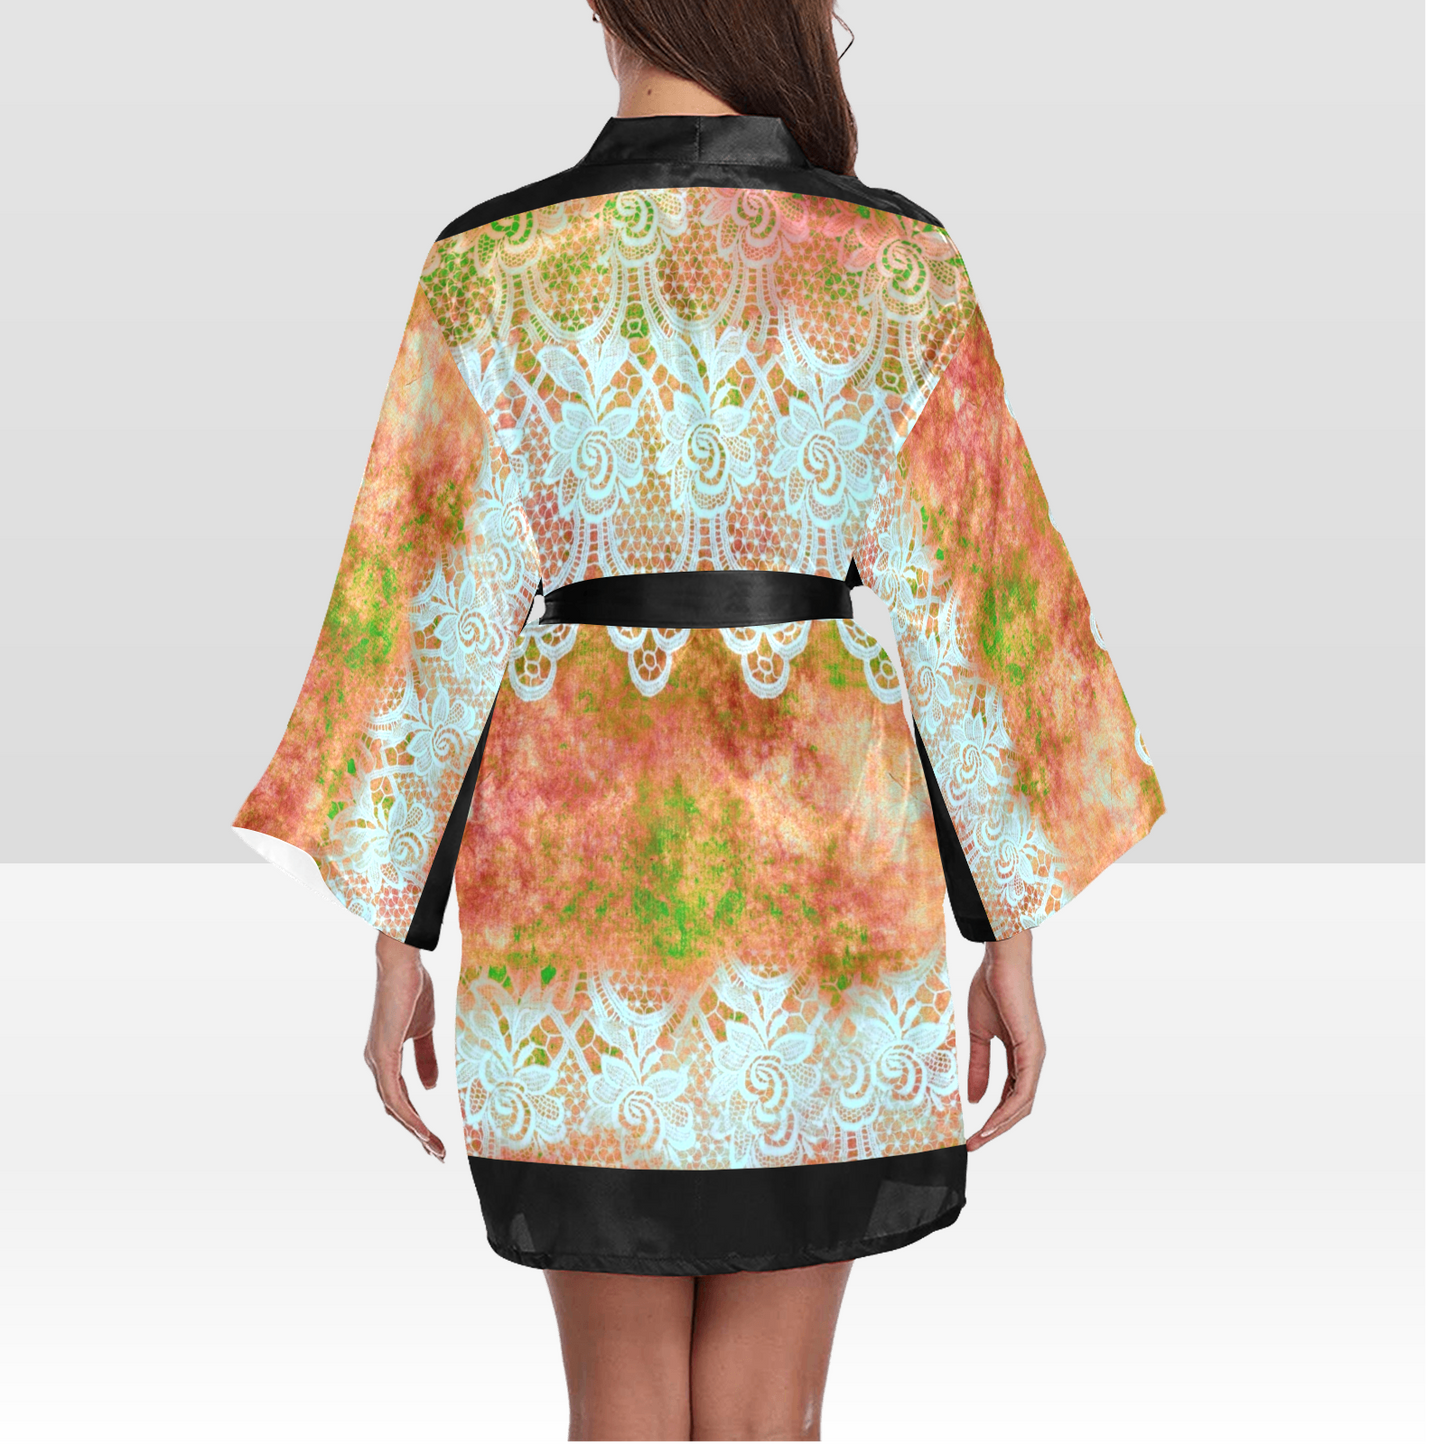 Victorian Lace Kimono Robe, Black or White Trim, Sizes XS to 2XL, Design 31